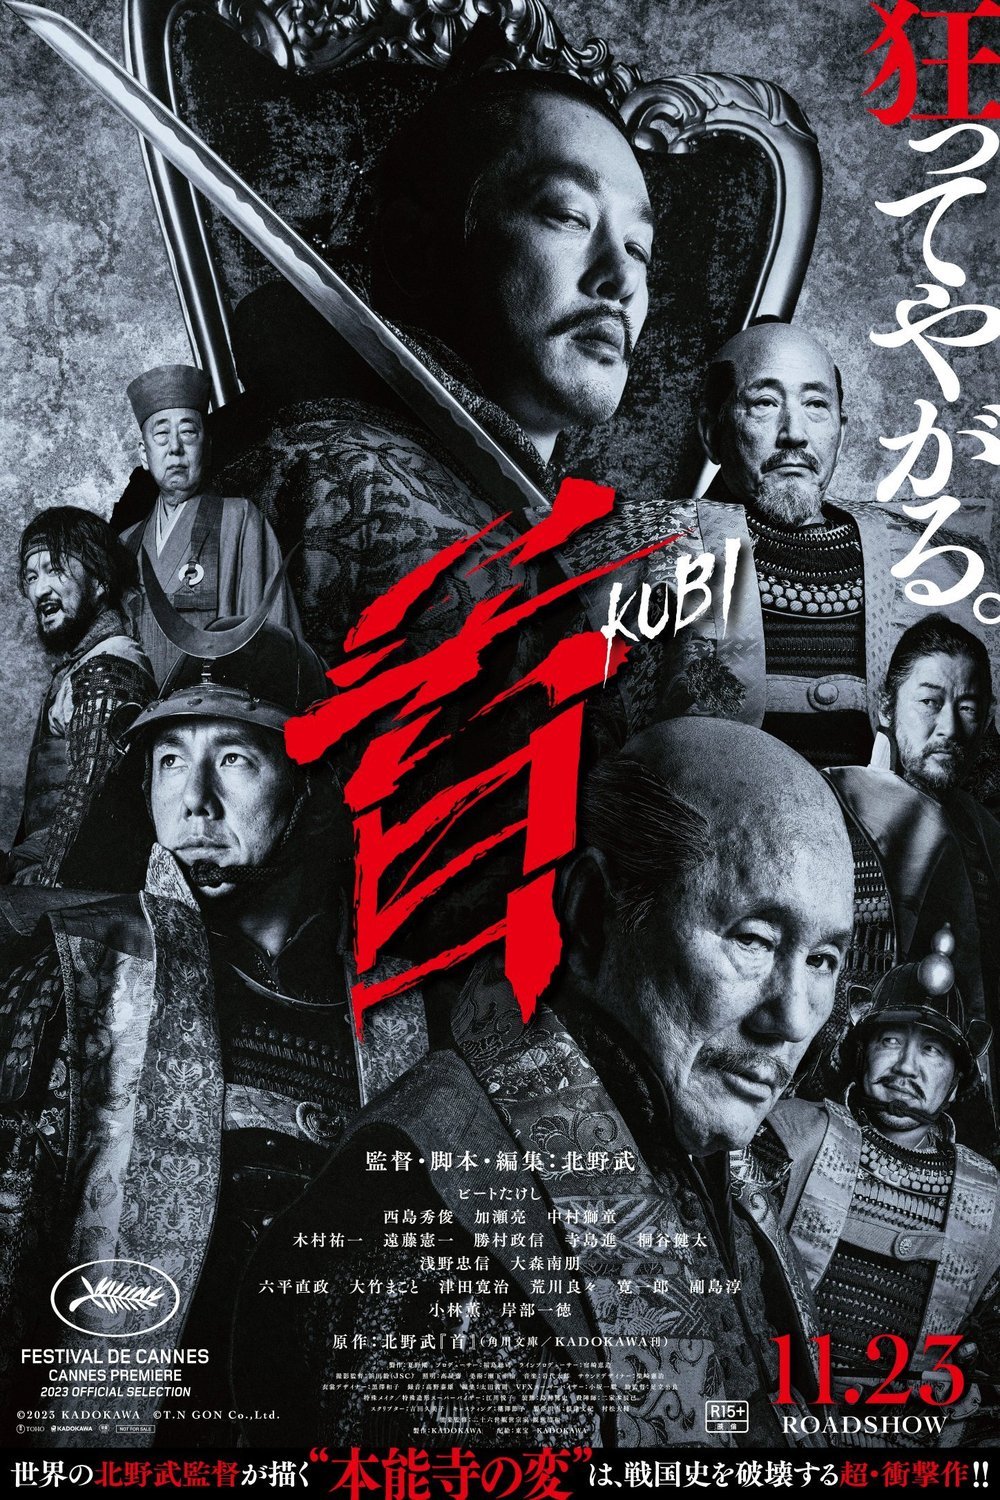 L'affiche originale du film Kubi en japonais